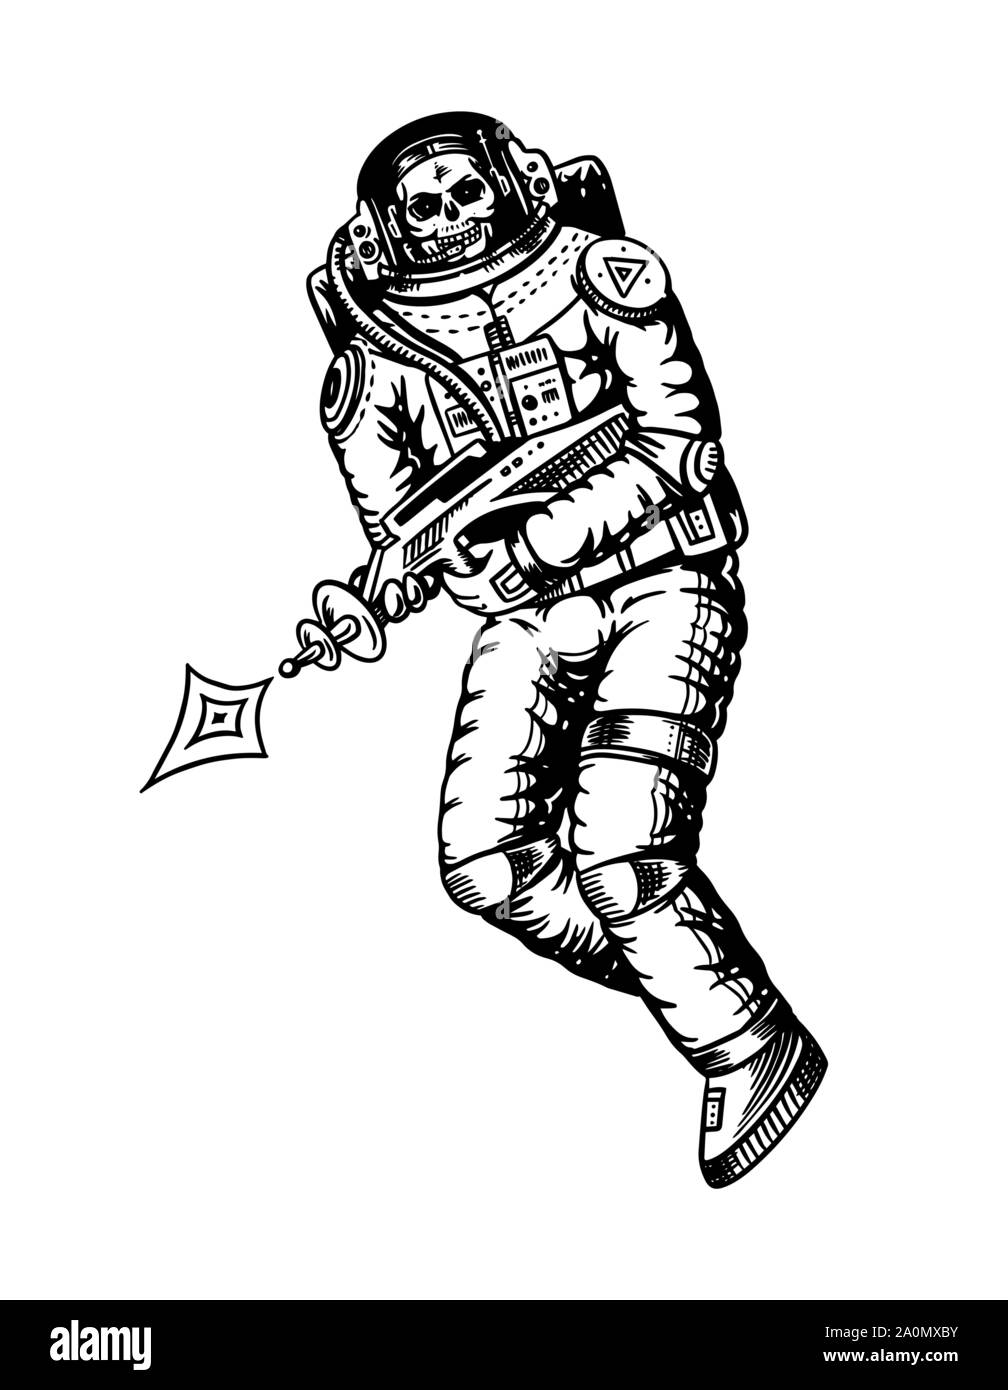 Planeur Spaceman. Squelette avec armes spatiales. Astronaute dans le système solaire. Vieux croquis dessinés à la main, gravée dans un style vintage. Illustration de Vecteur